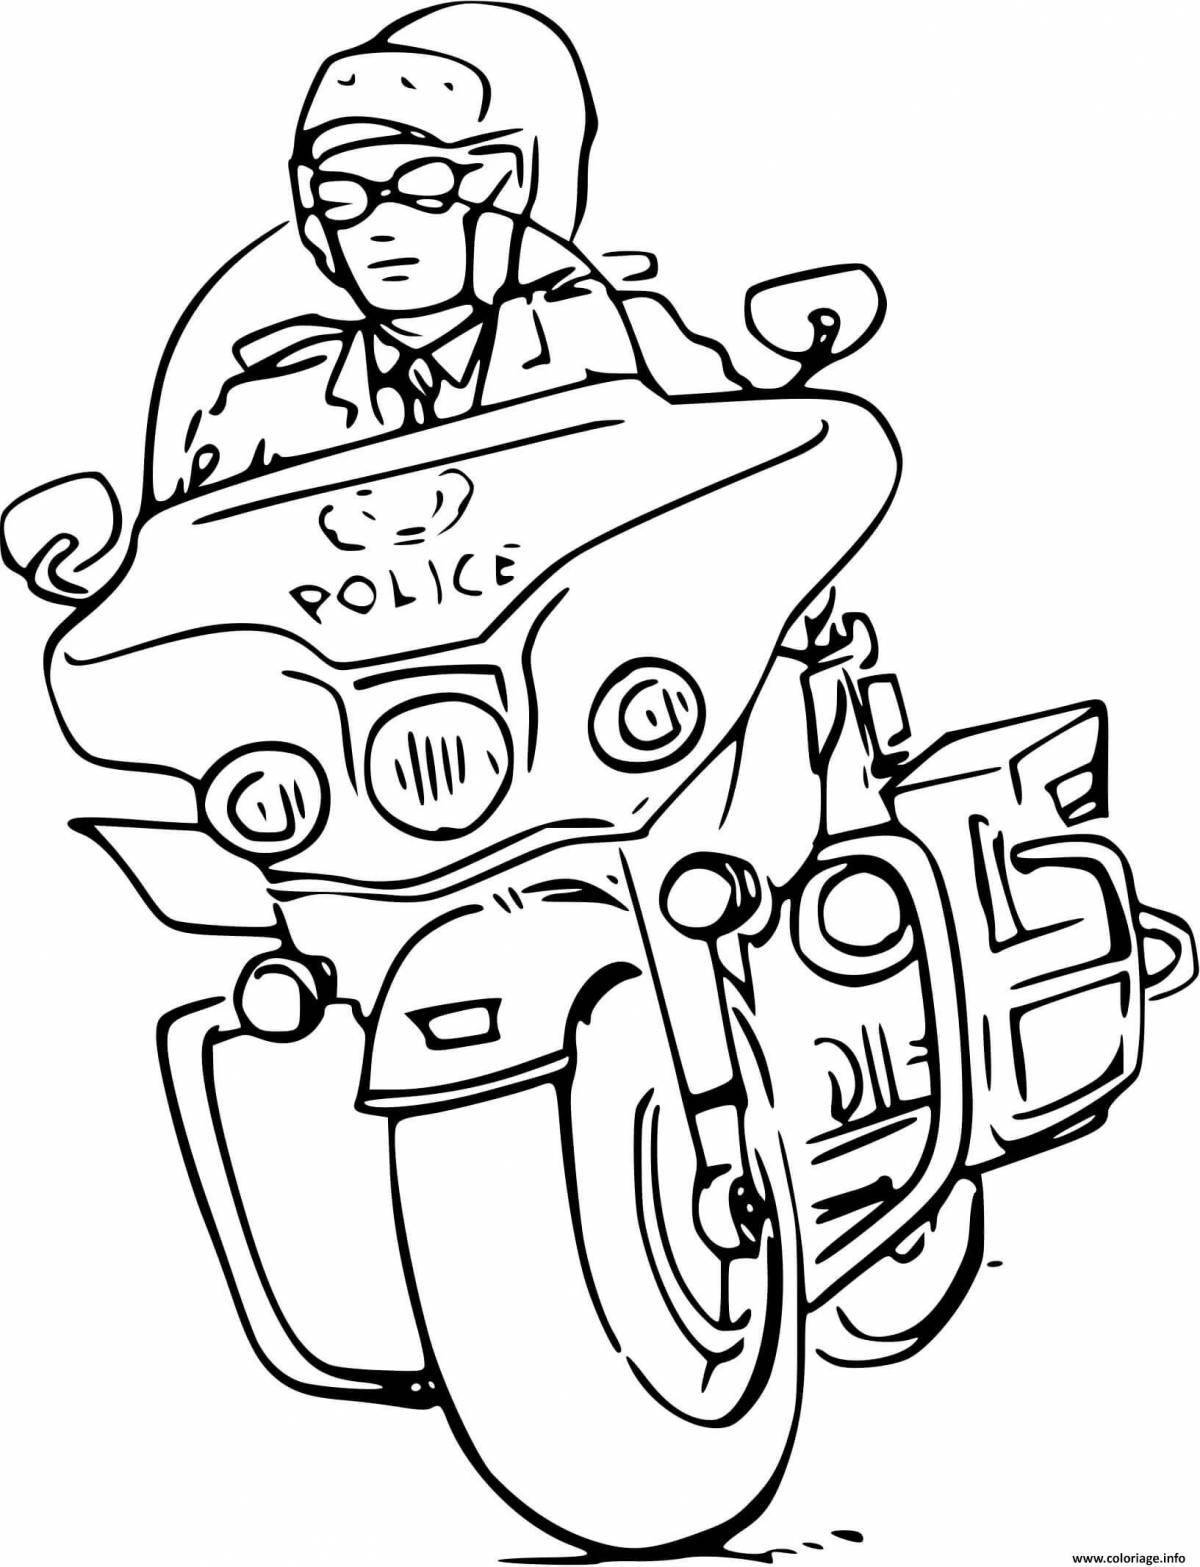 Раскраска выдающаяся мотоциклетная полиция